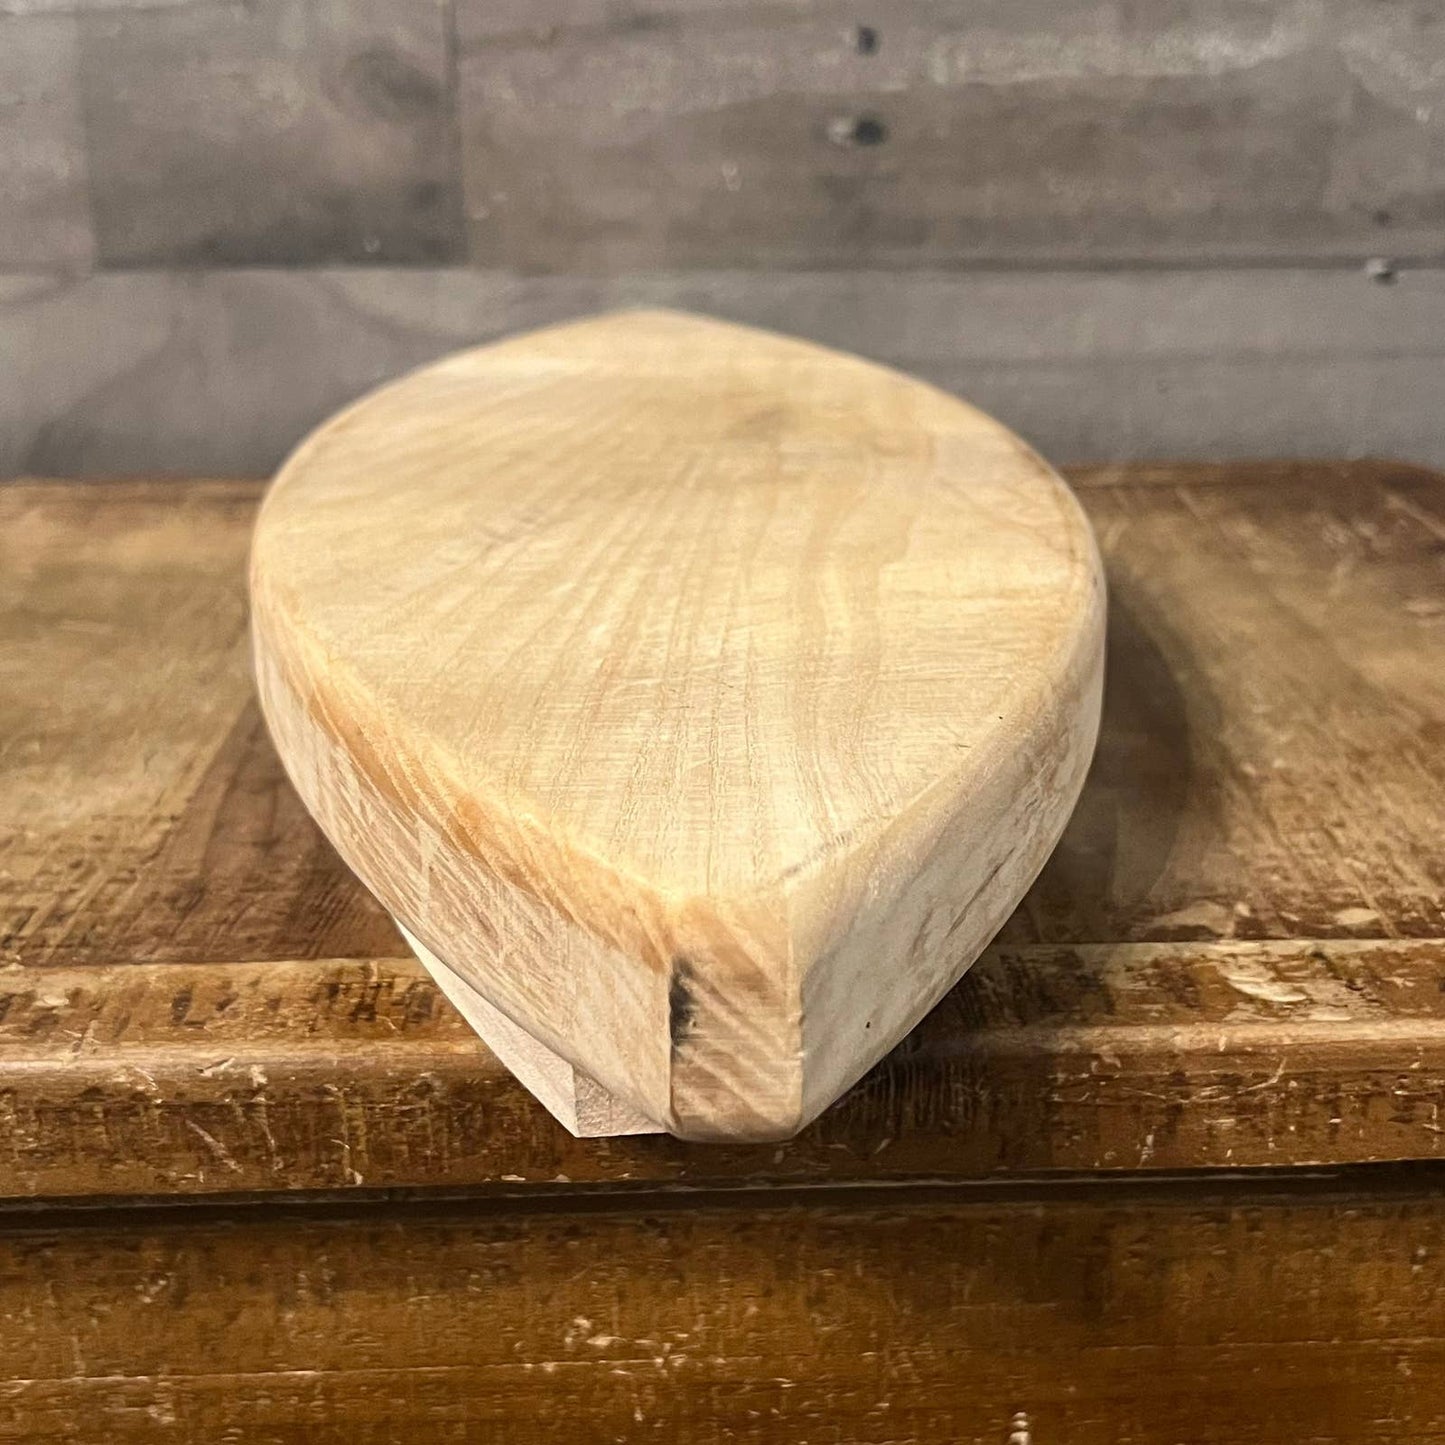 Almond shaped wood board platter tray - charcuterie board - cutting board